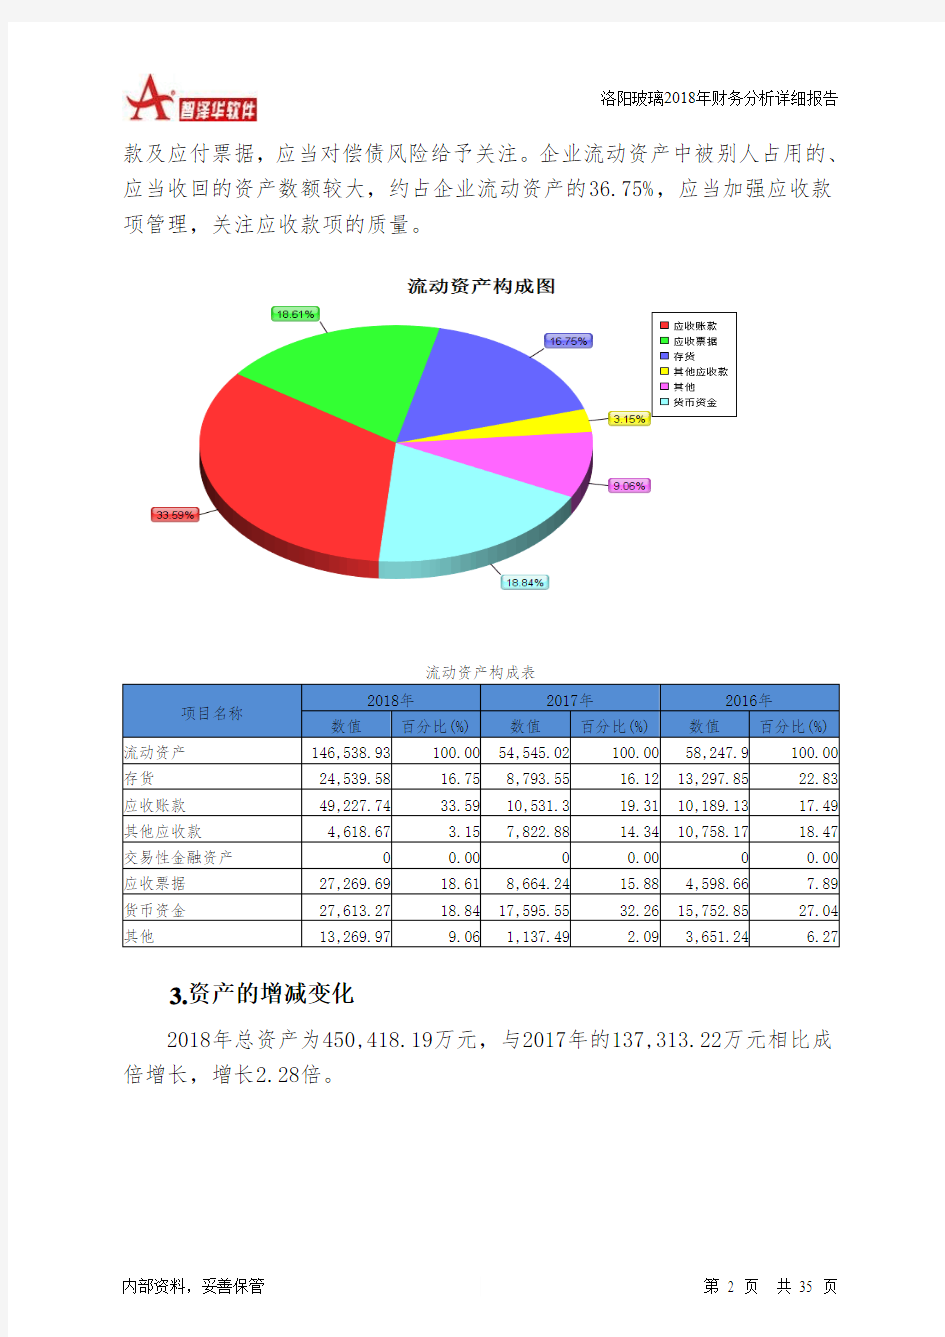 洛阳玻璃2018年财务分析详细报告-智泽华